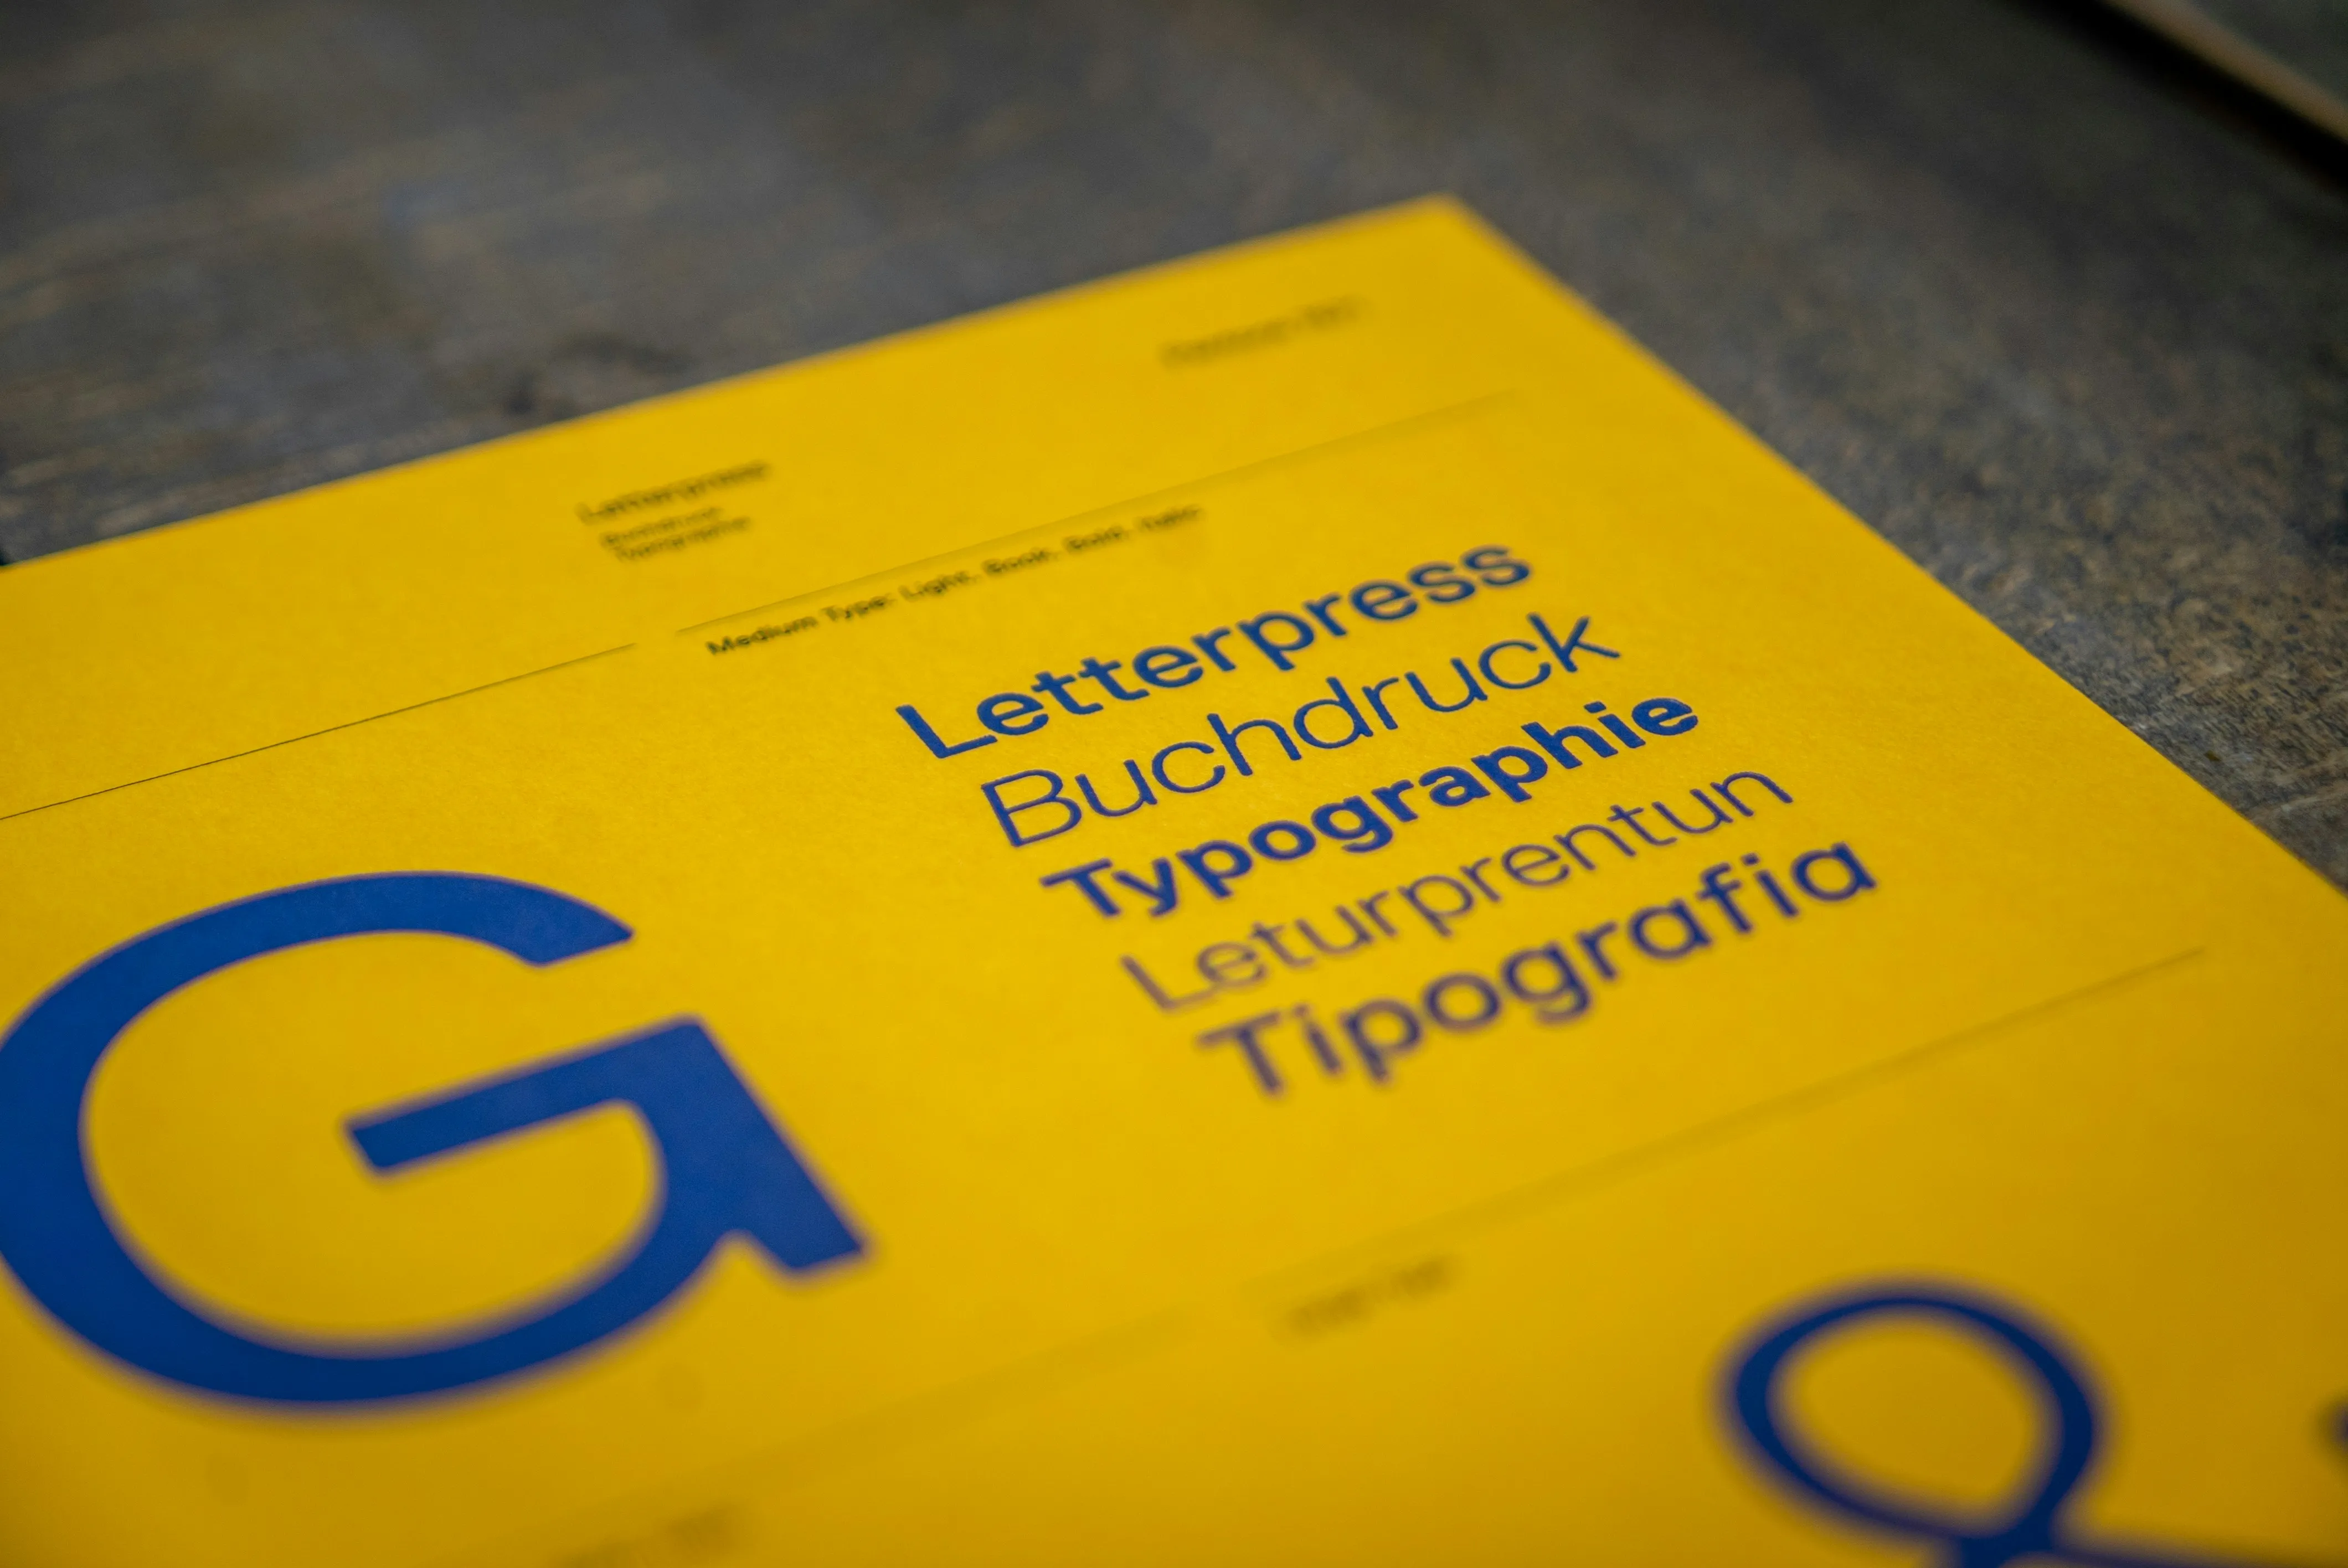 Ein Bild, das verschiedene Schriftarten und typografische Gestaltungen zeigt, um die Vielfalt und Bedeutung der Typografie im Webdesign hervorzuheben